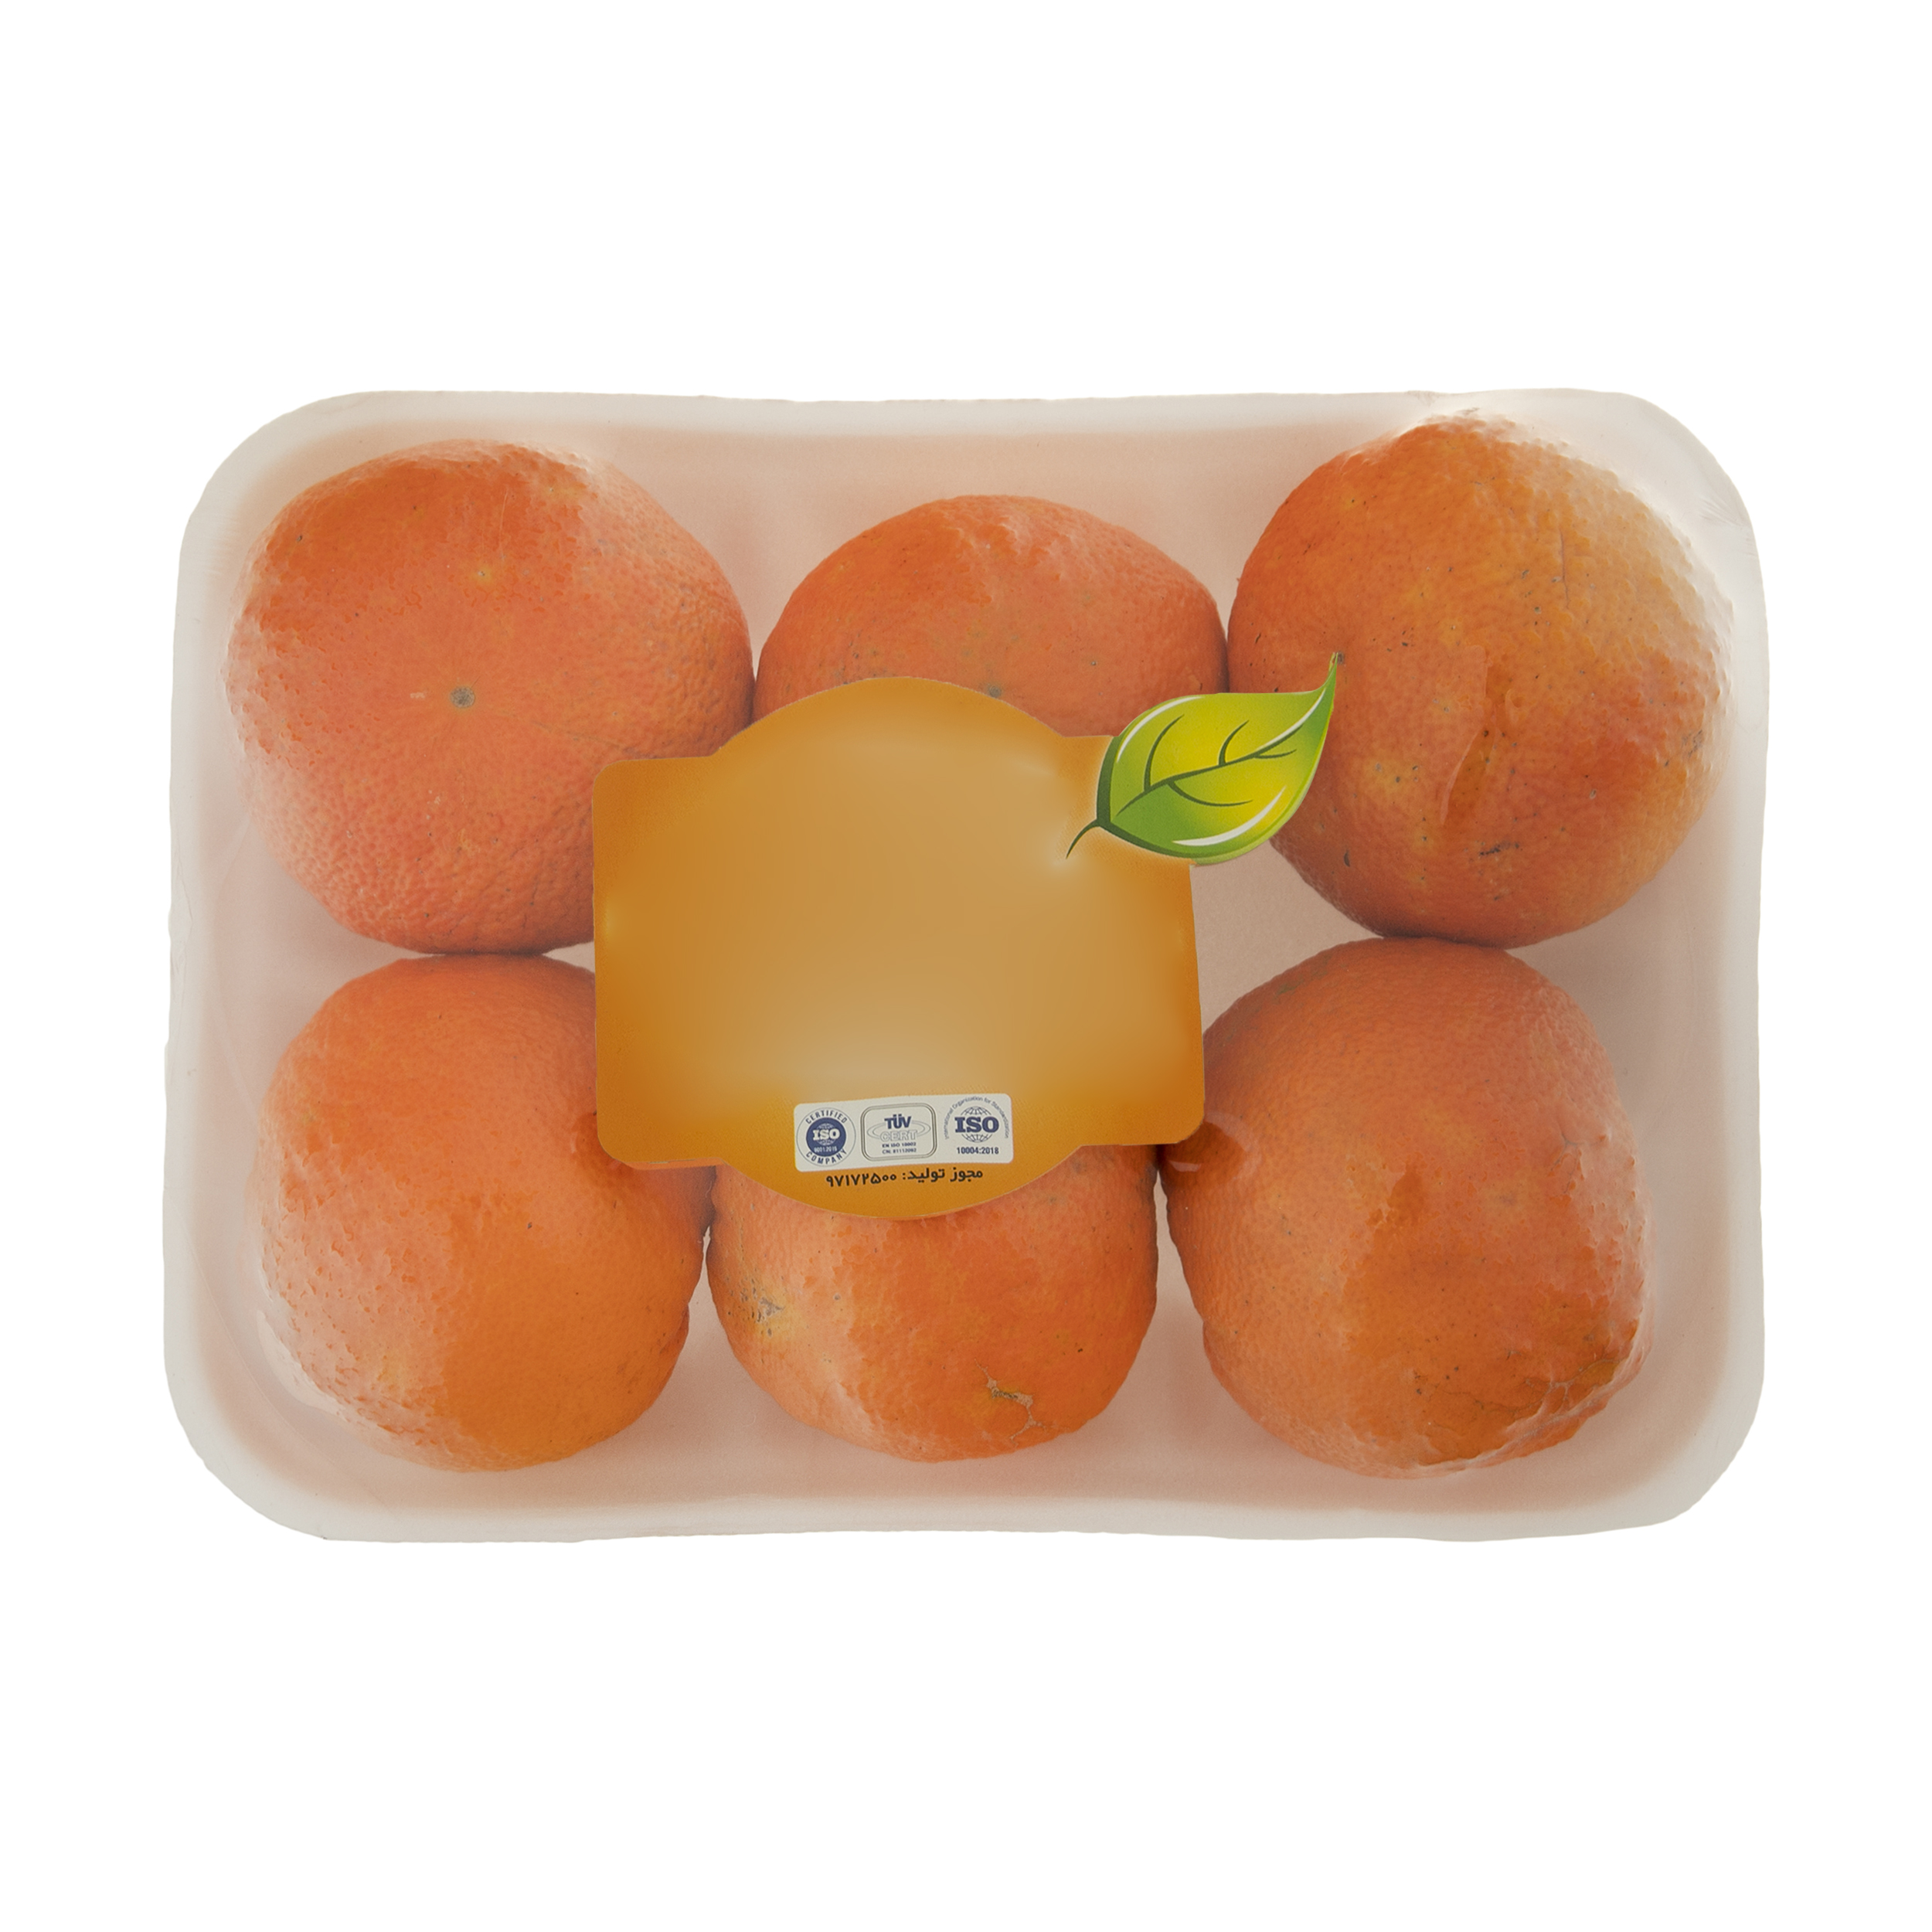 پرتقال آبگیری میوکات - 1 کیلوگرم